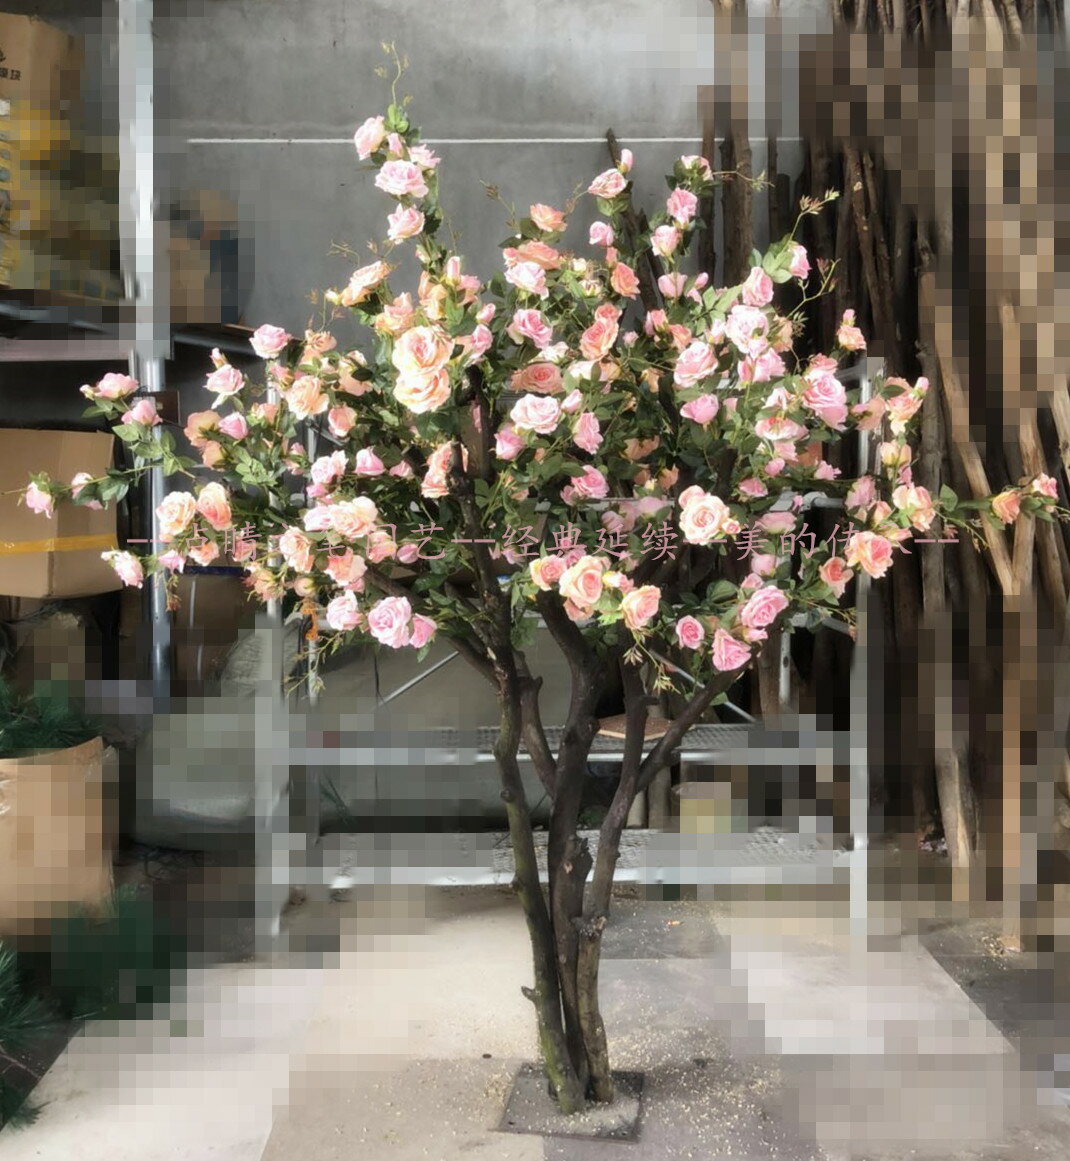 仿真玫瑰花樹 假樹大型植物 櫻花桃花室內客廳婚慶幸福樹裝飾定制